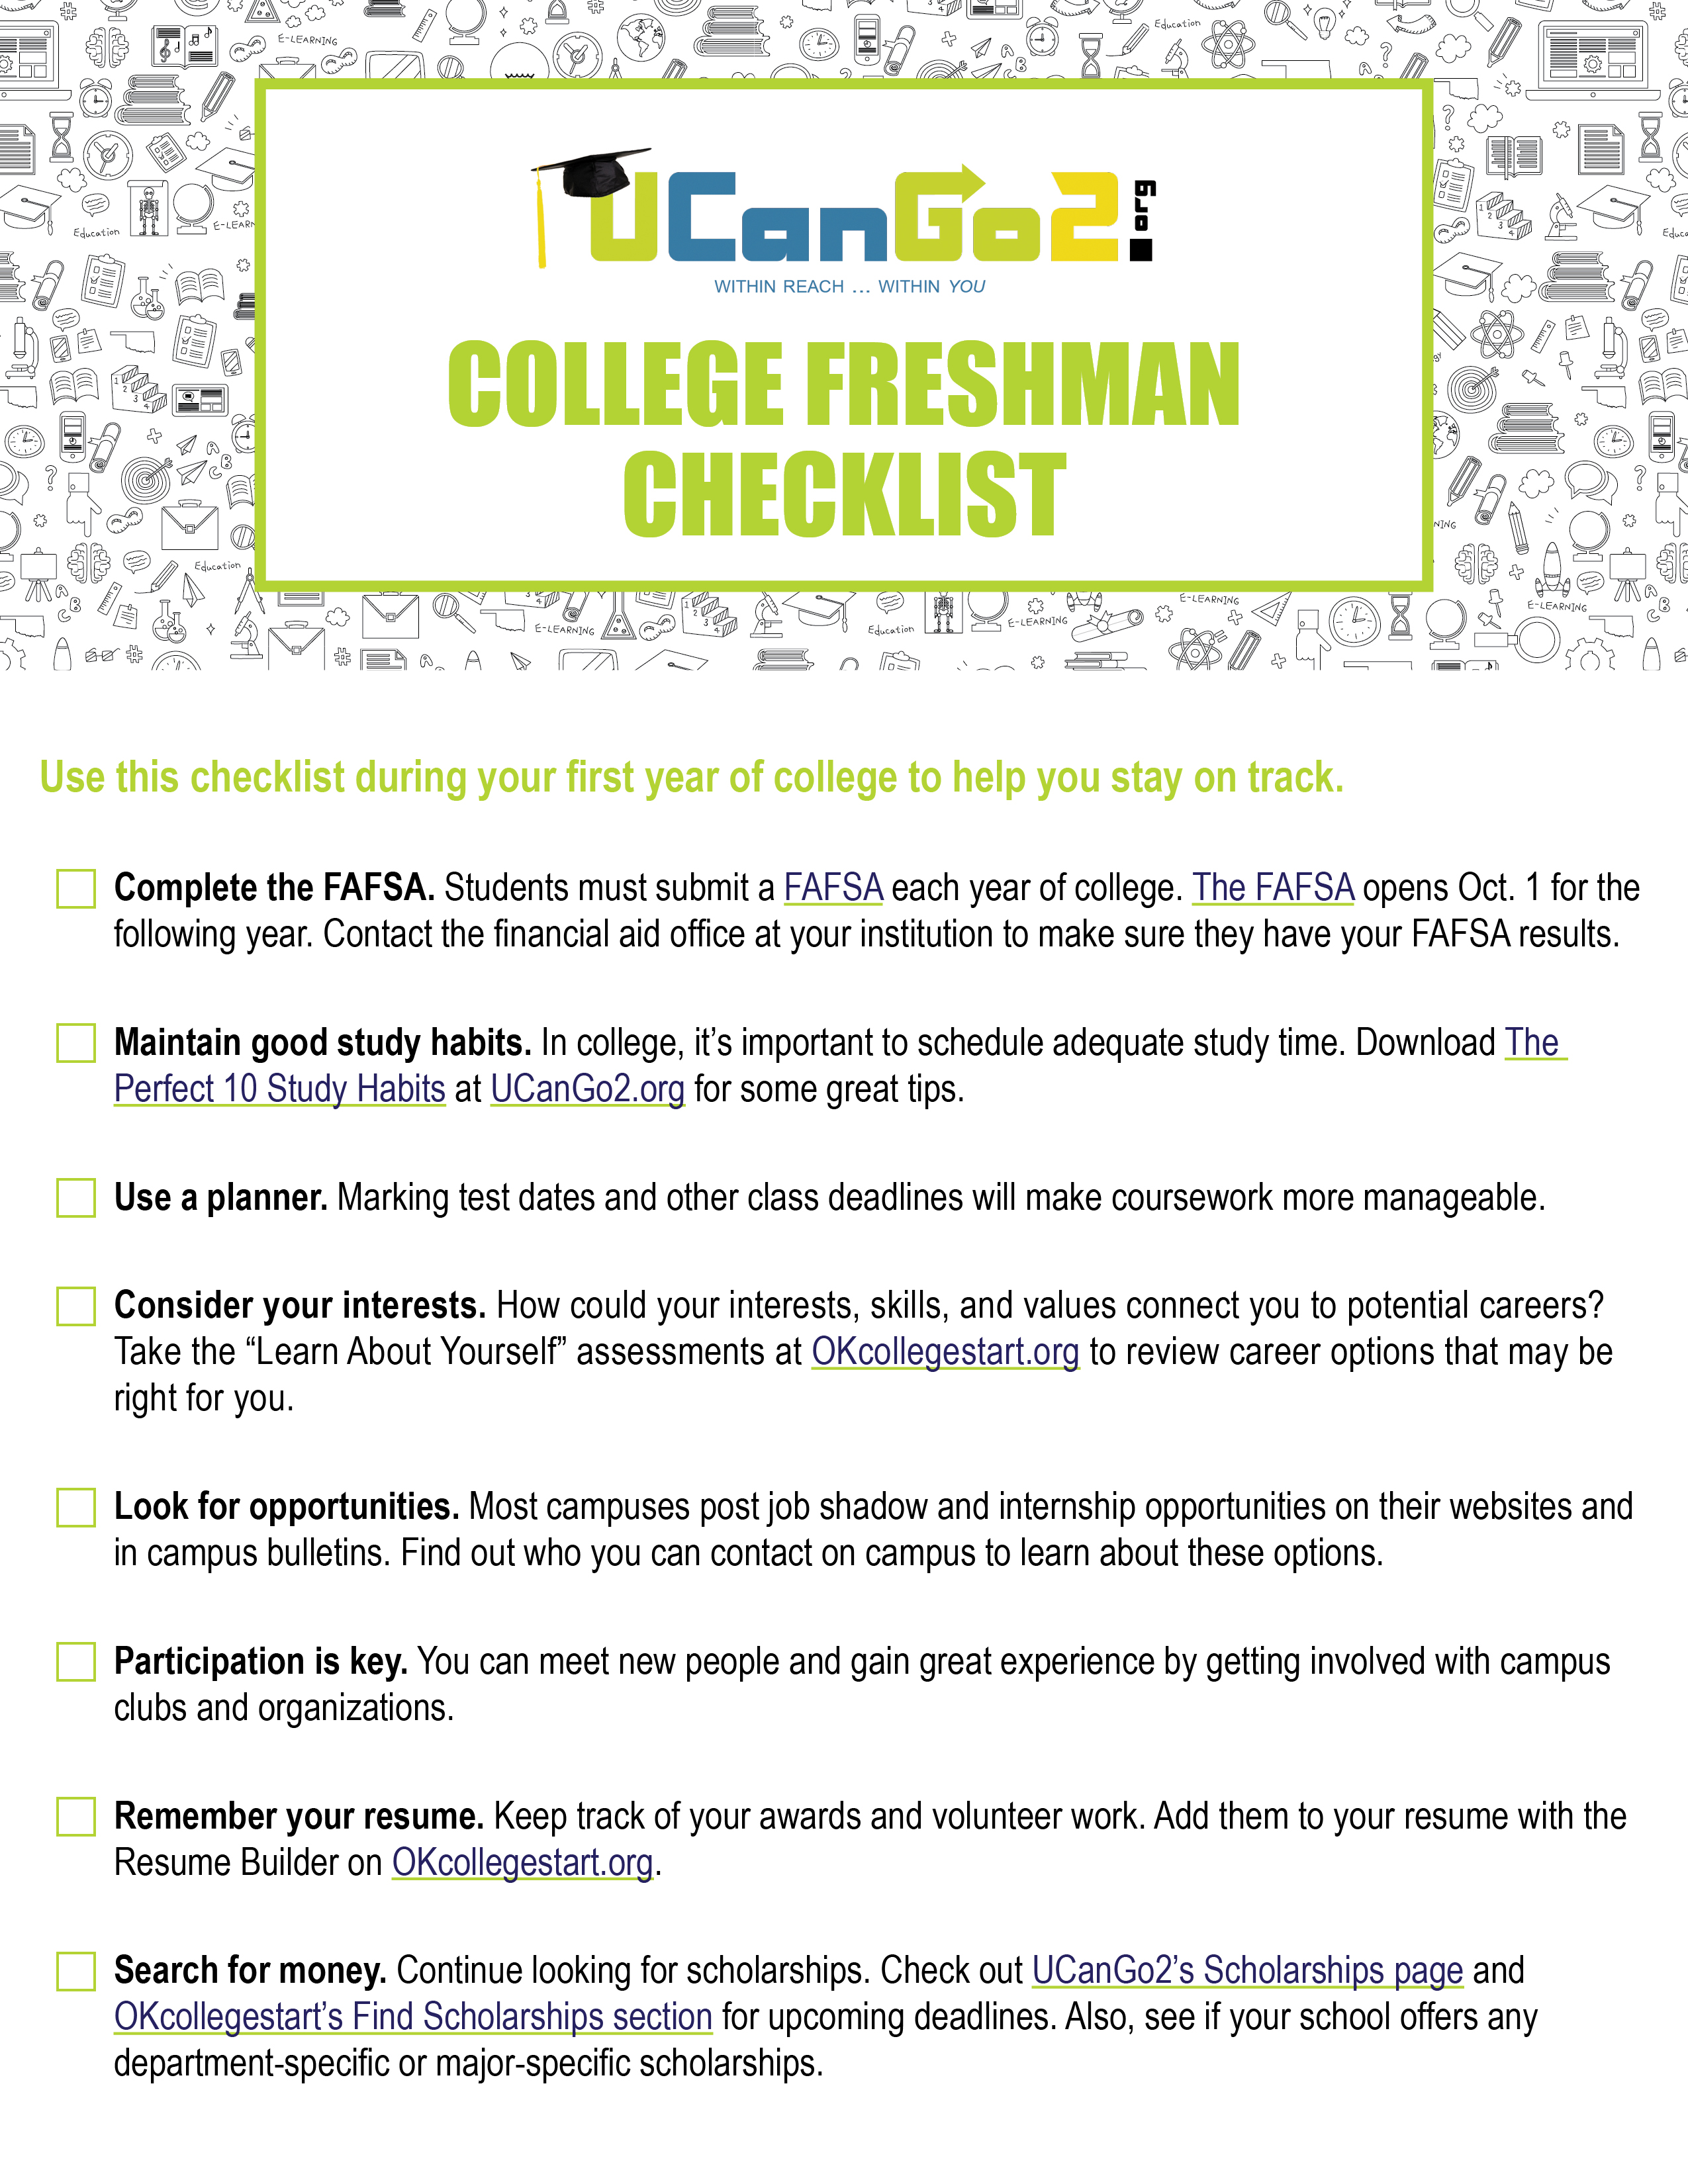 PDF of College Freshmen Checklist